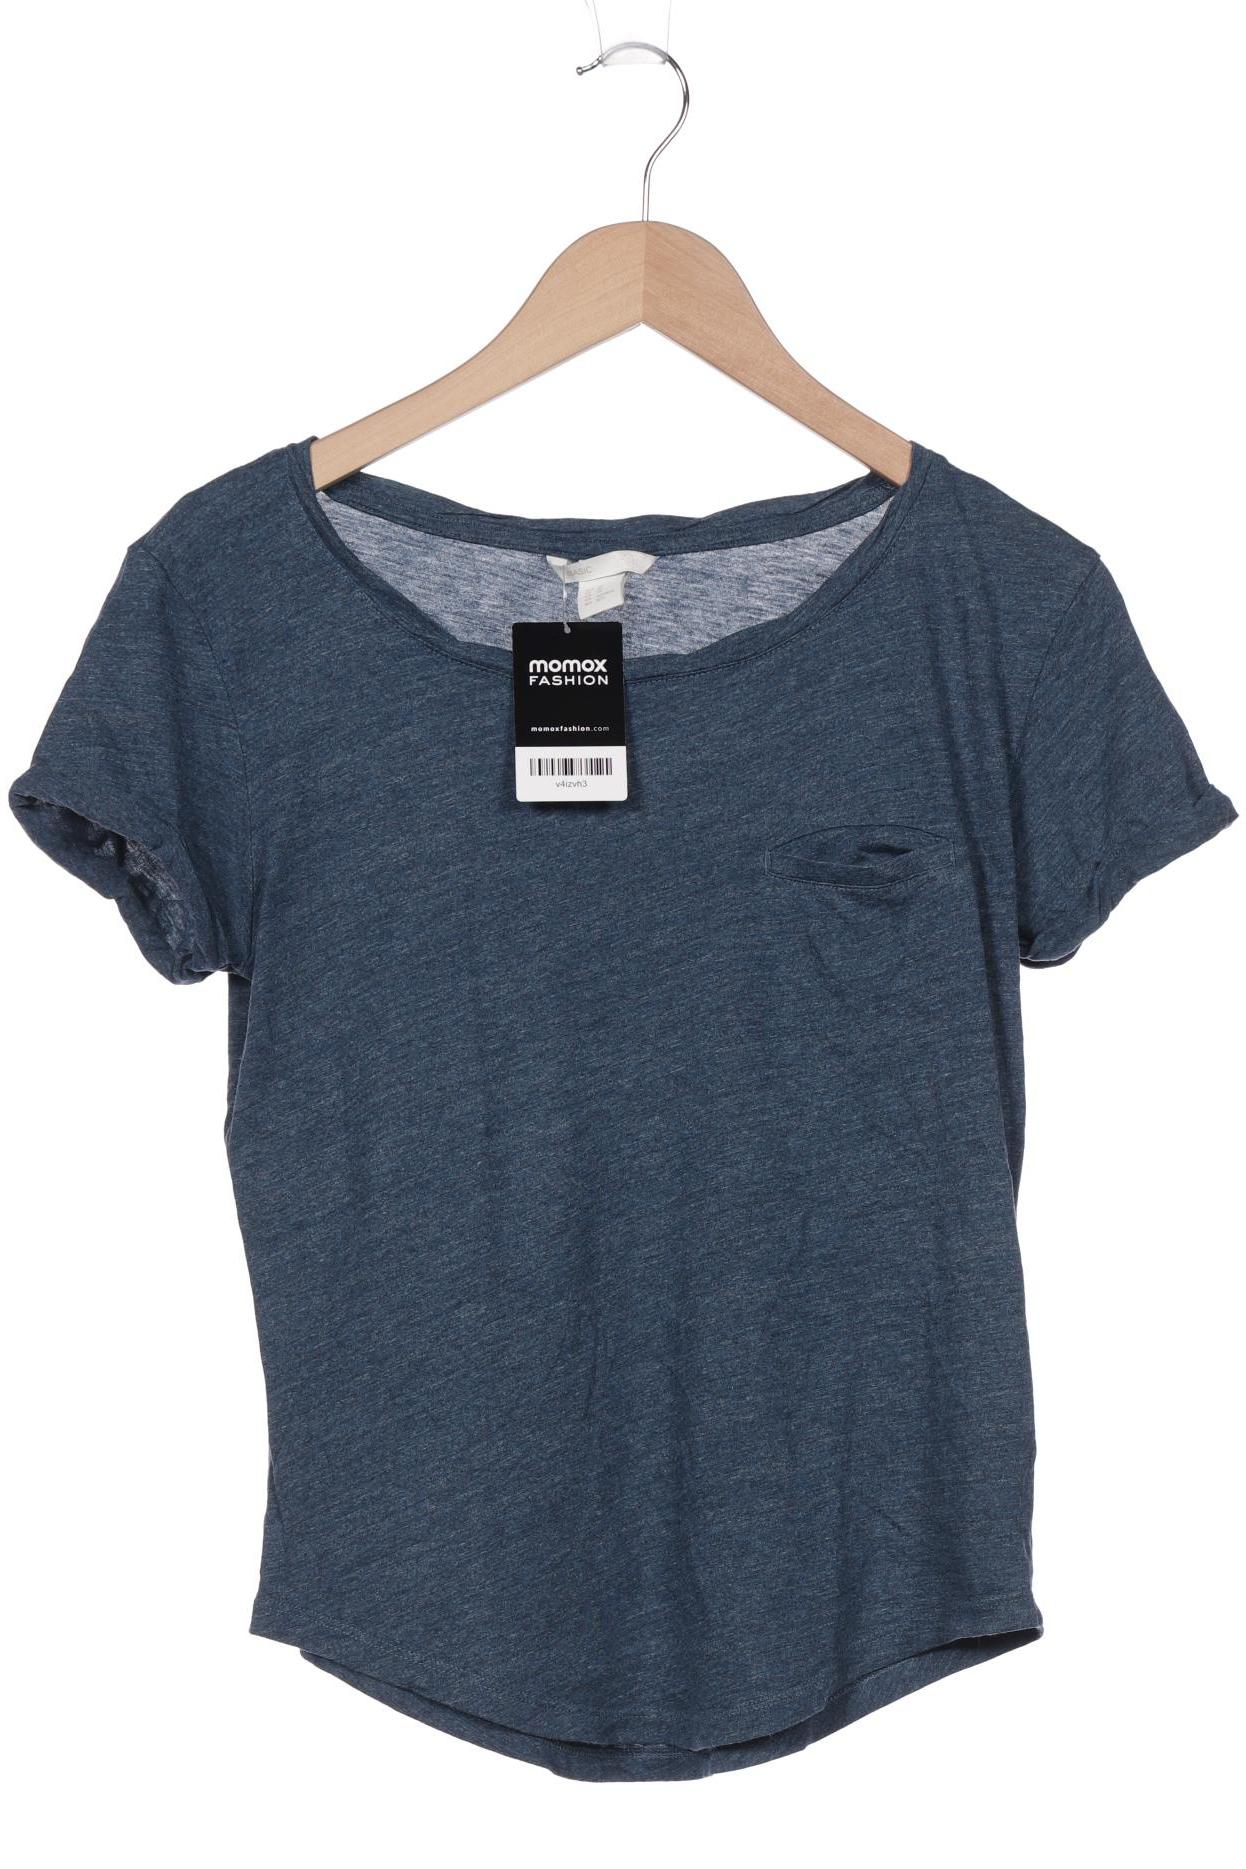 H&M Damen T-Shirt, marineblau, Gr. 34 von H&M